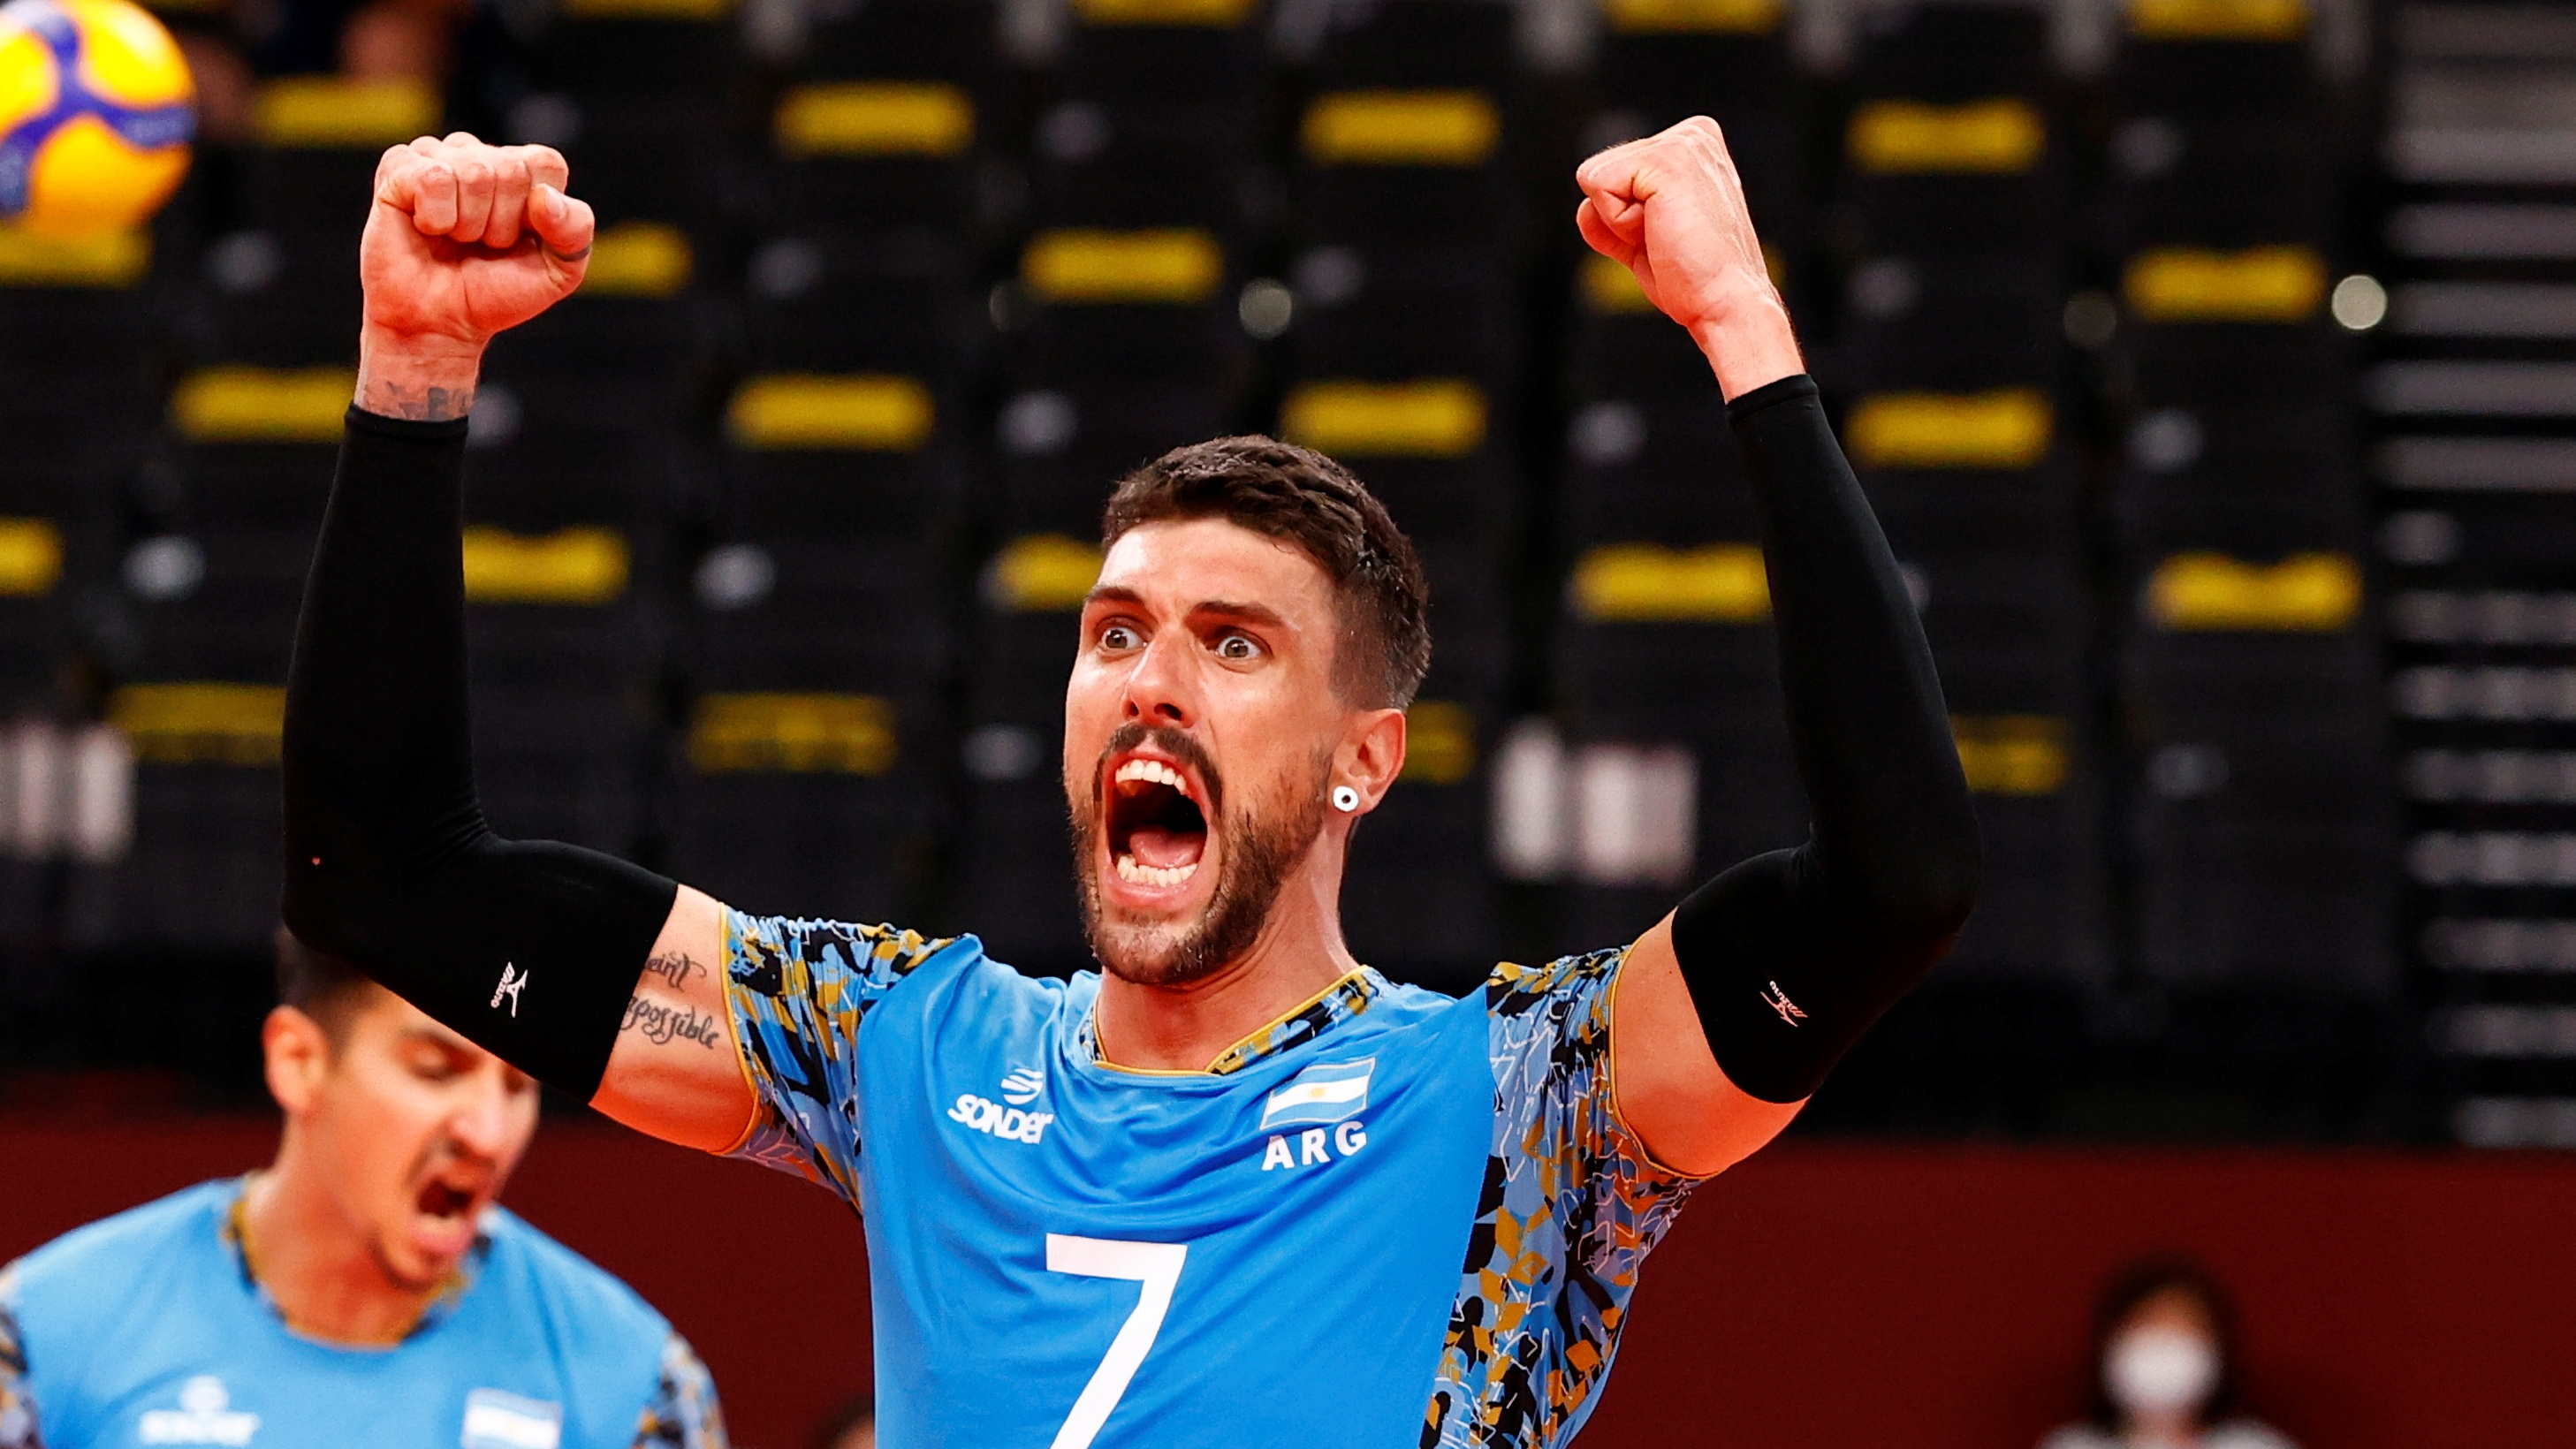 La alegría del jugador de voleibol argentino Facundo Conte (REUTERS/Carlos Garcia Rawlins)